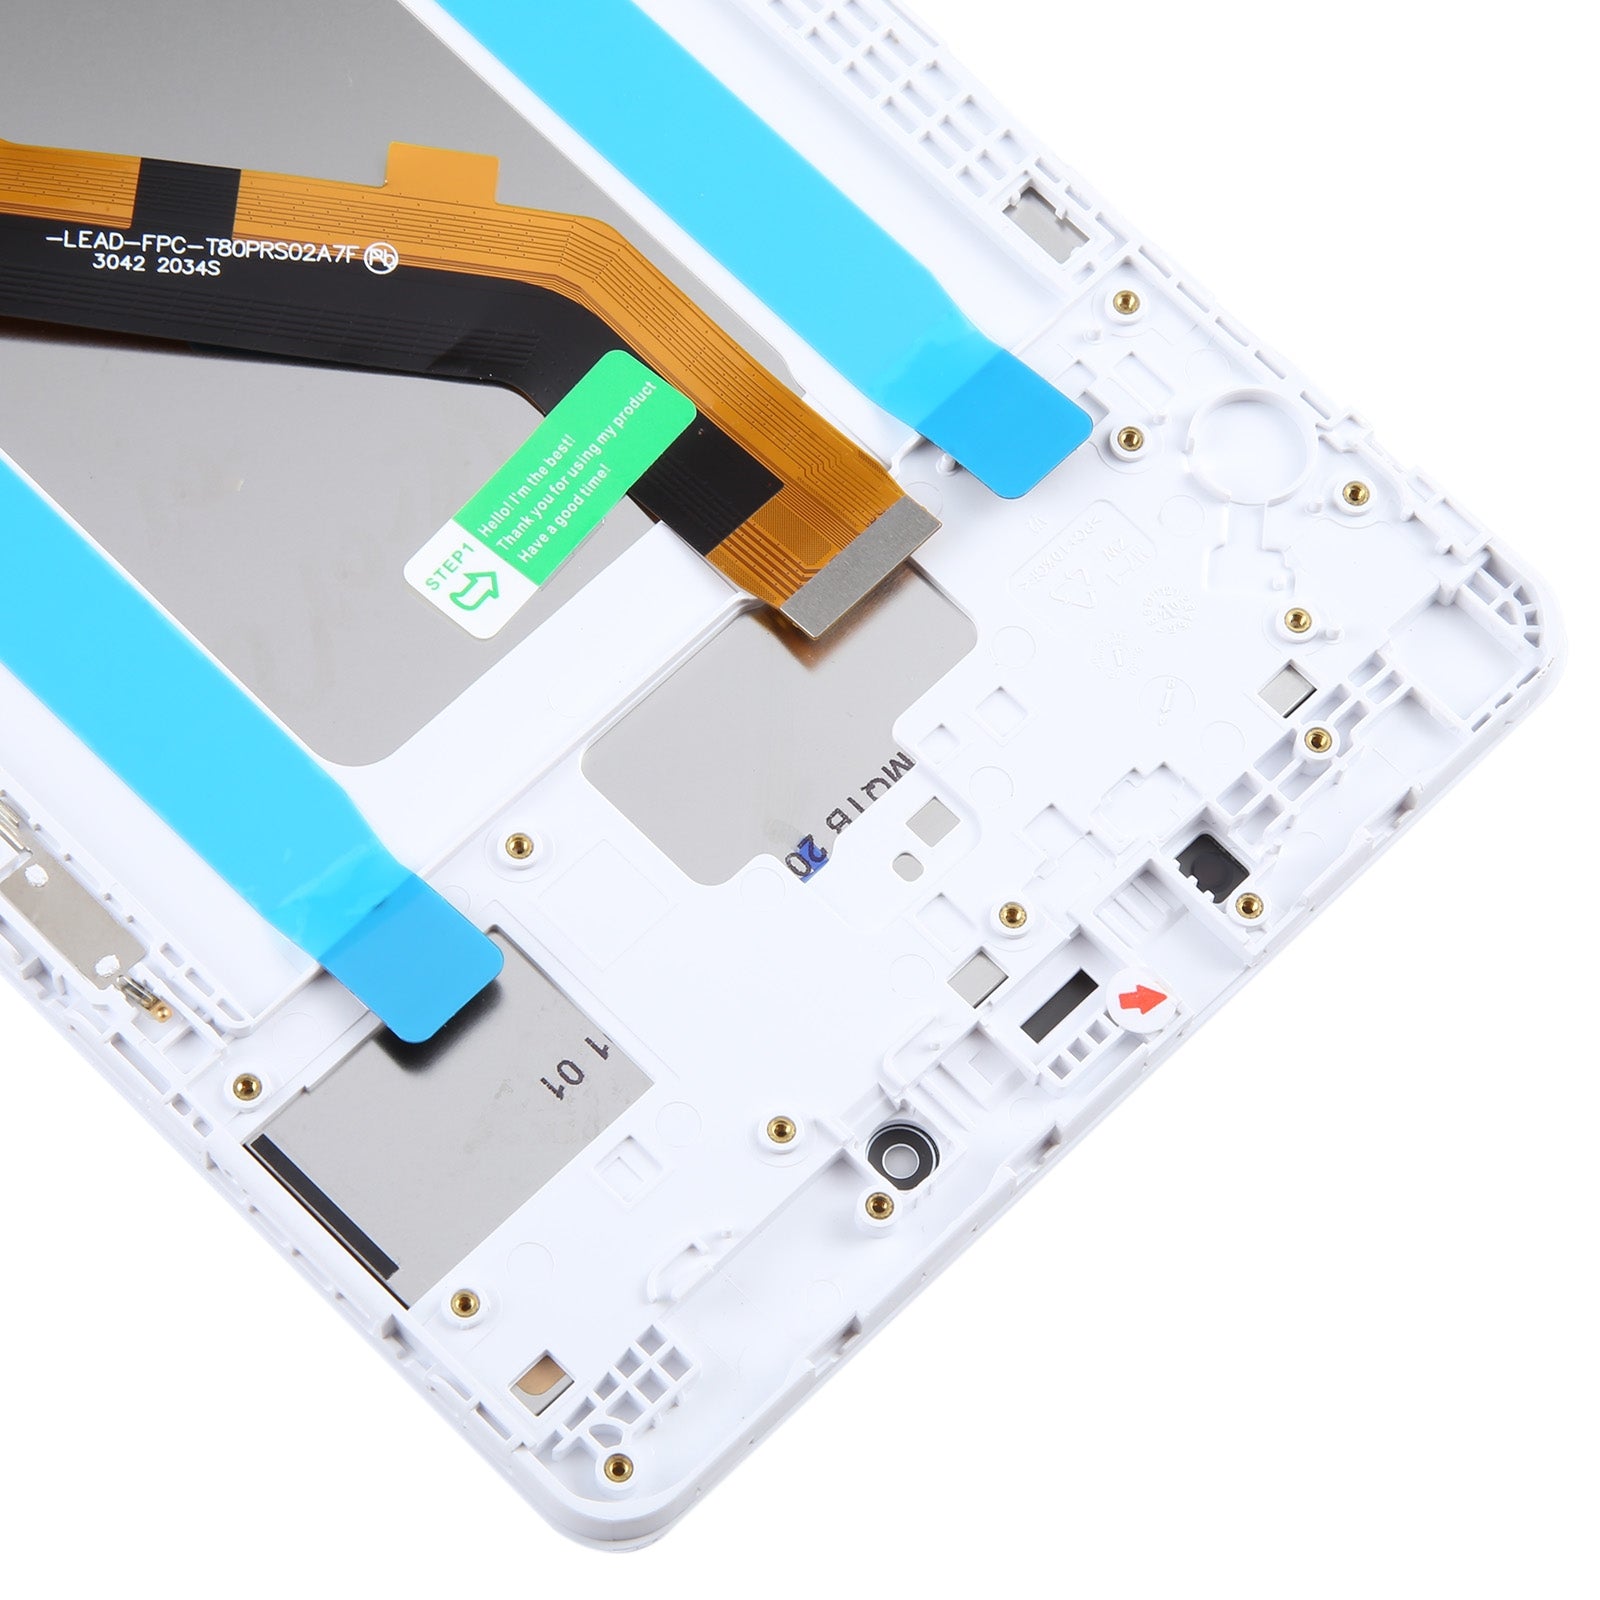 Ecran Plein + Tactile + Châssis Samsung Galaxy Tab A 8.0 2019 T290 WiFi Edition Blanc